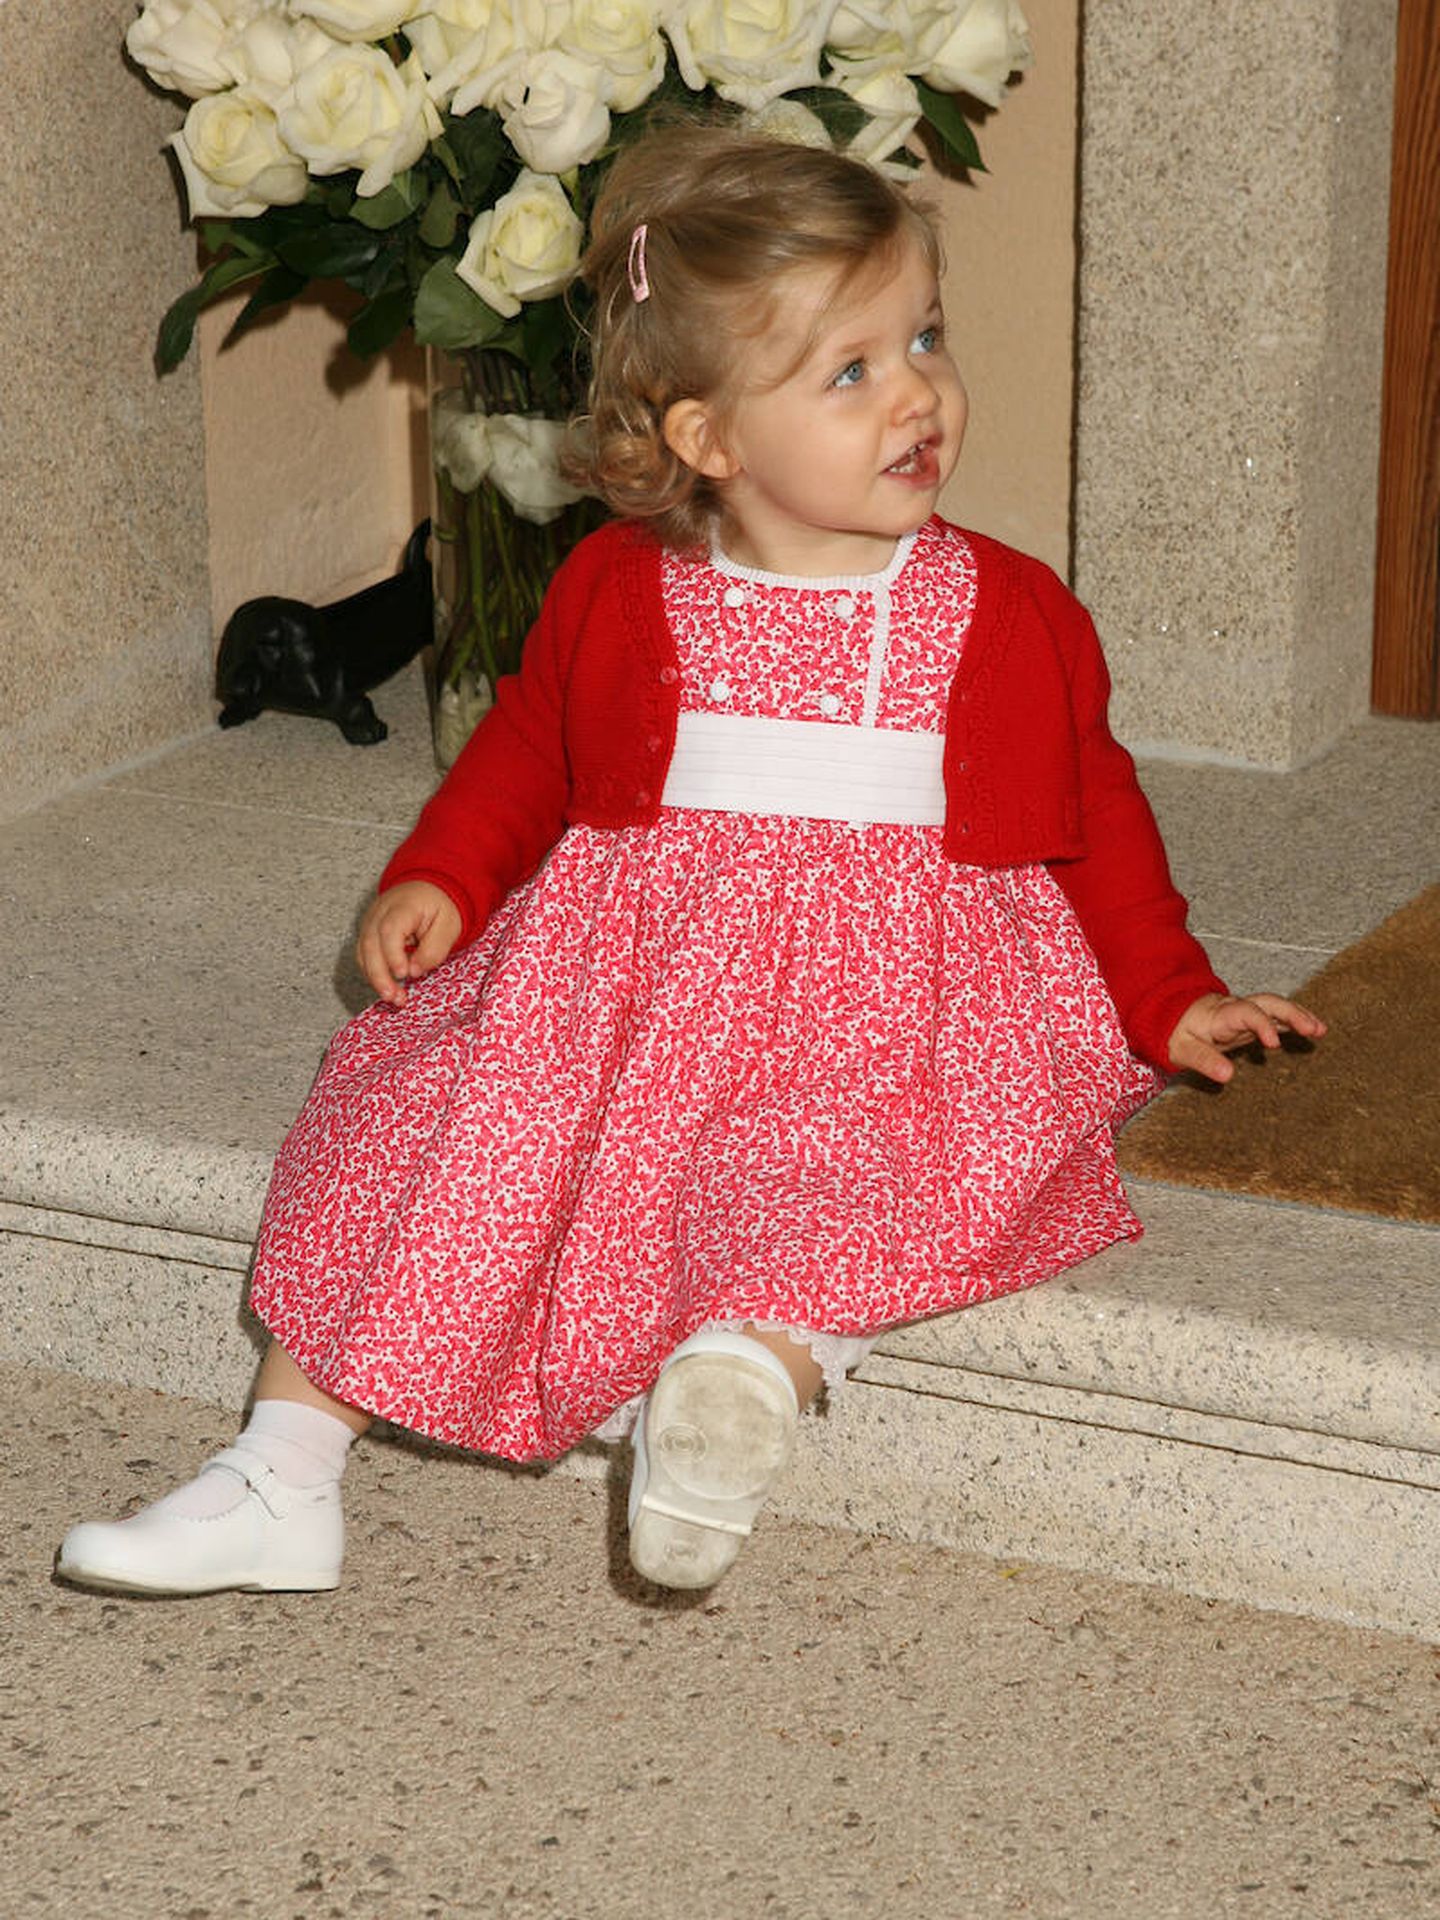 La princesa Leonor, en 2007, tras el nacimiento de Sofía. (Casa de S. M. el Rey)